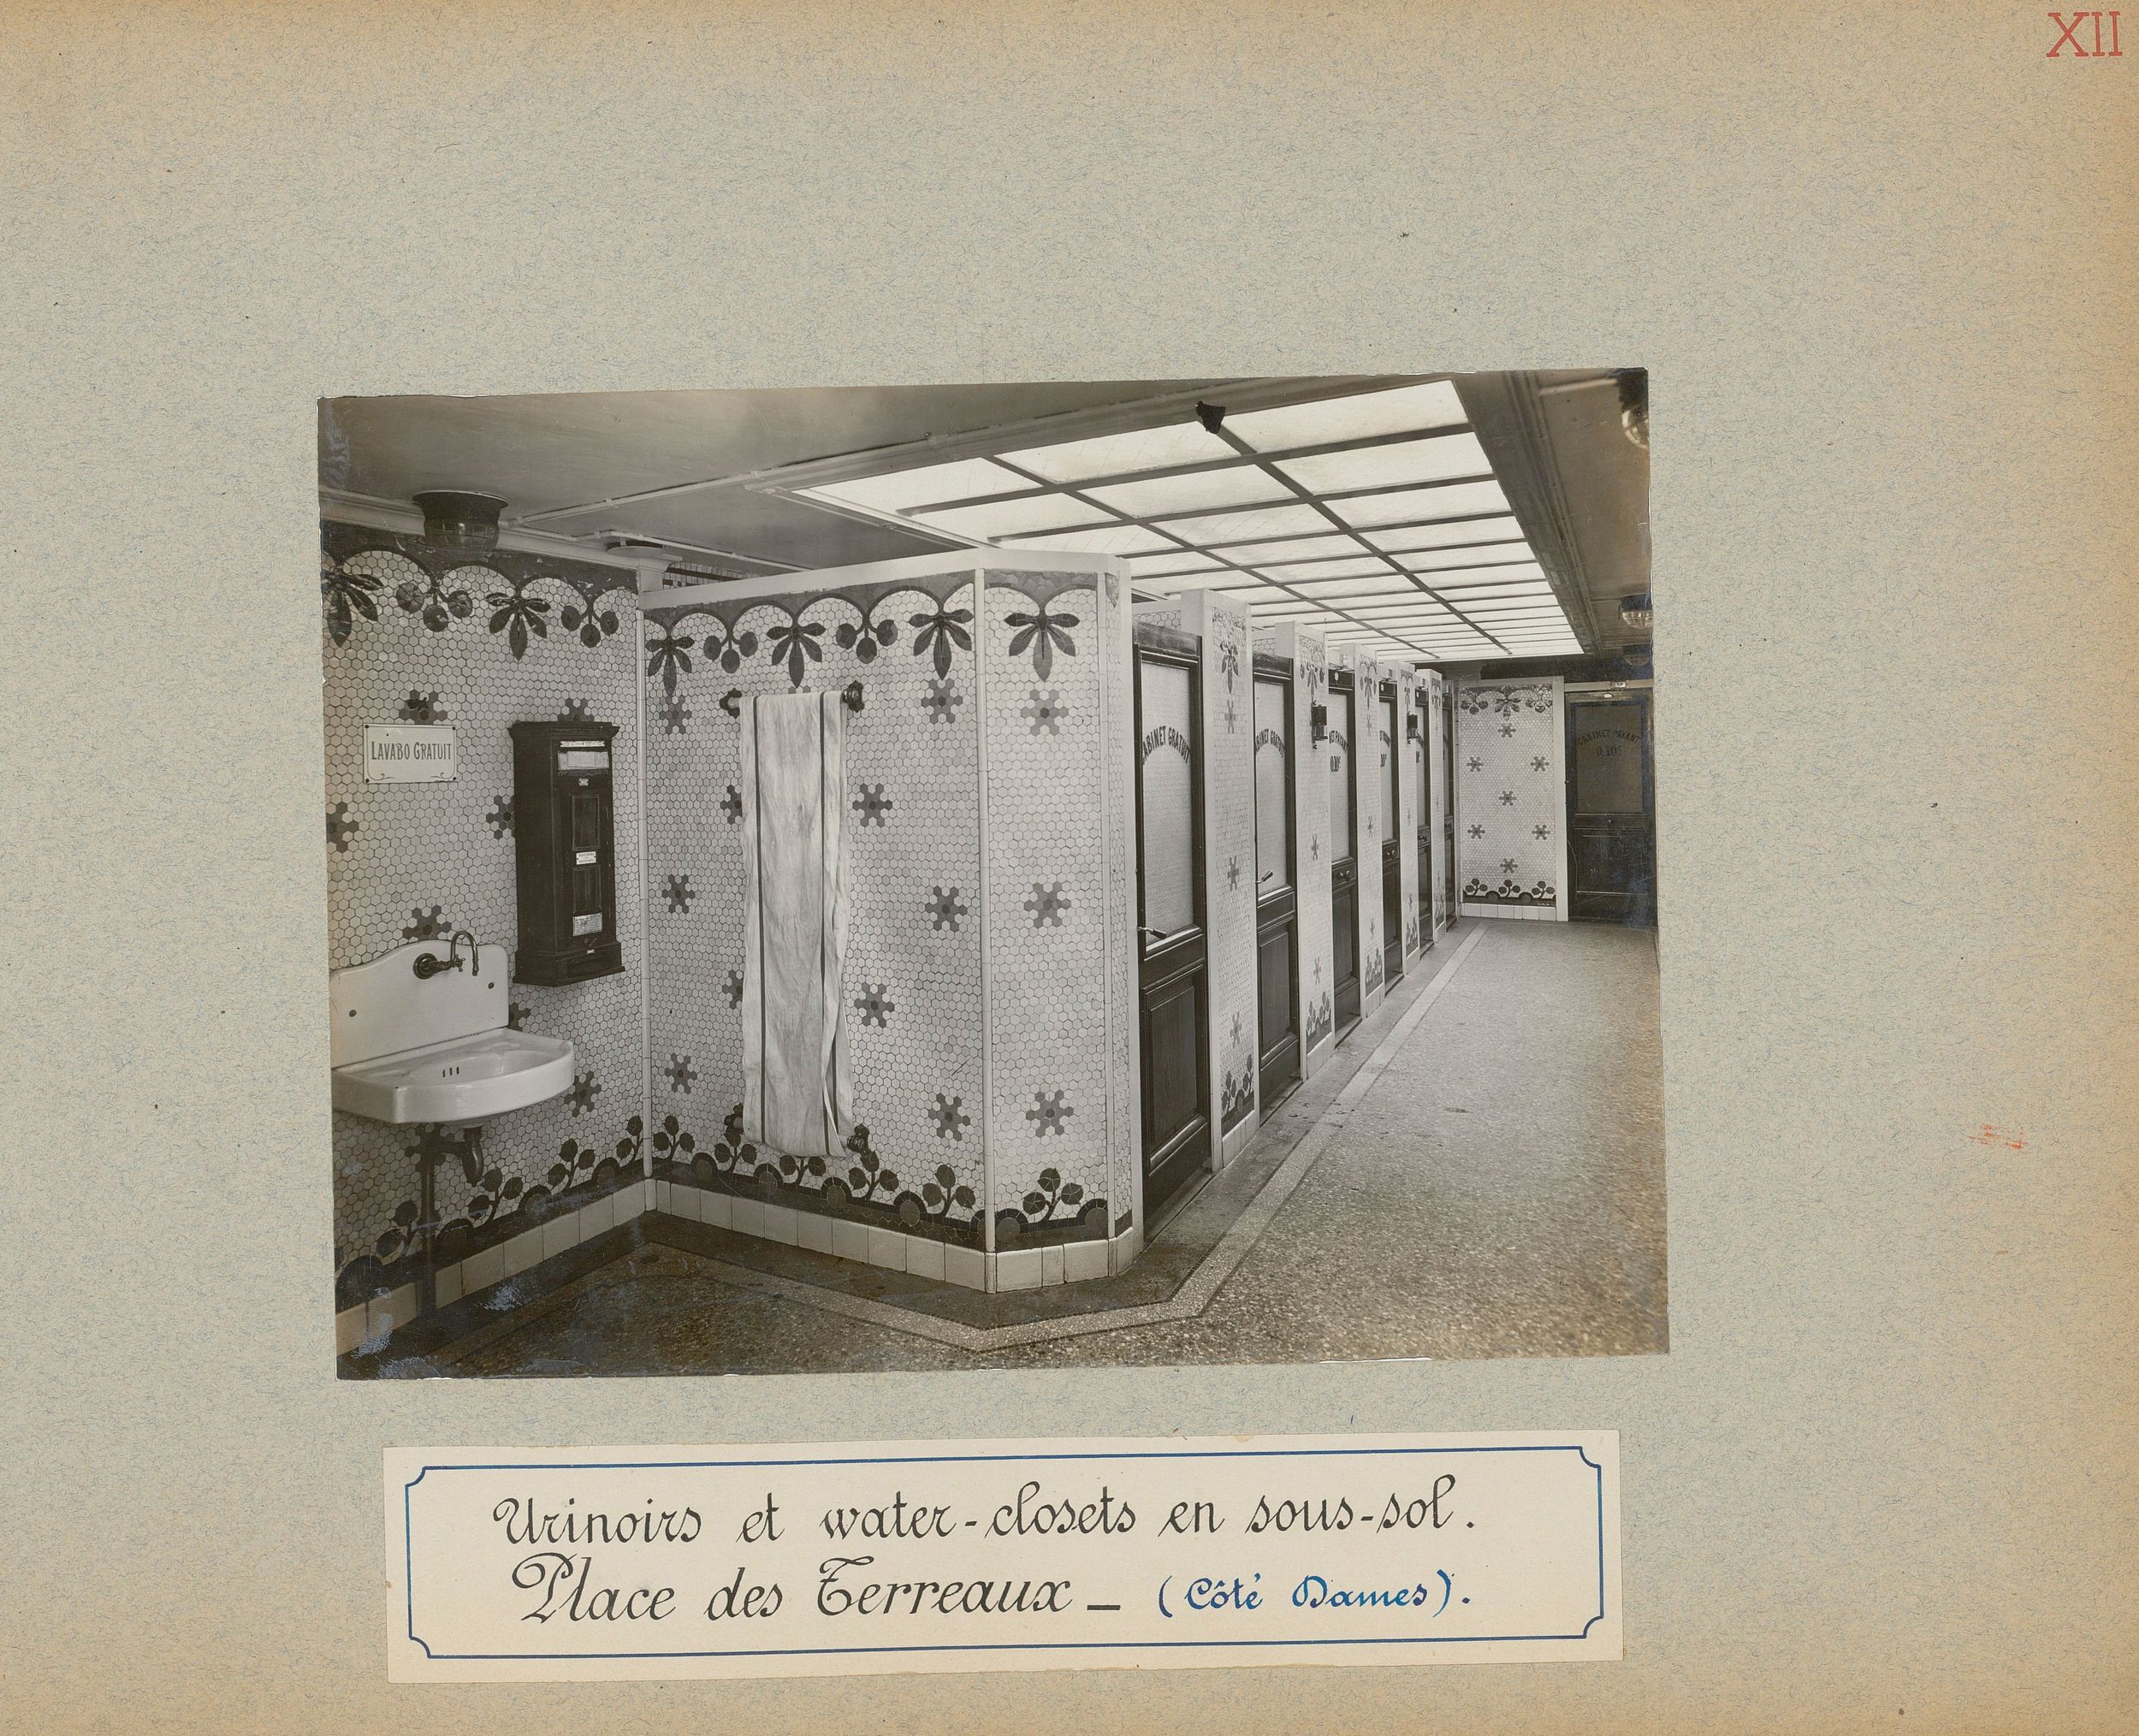 Urinoirs et water-closets en sous-sol place des Terreaux côté dames : tirage photo par le Service municipal de la voirie (1914-1915, 3SAT/24/15)